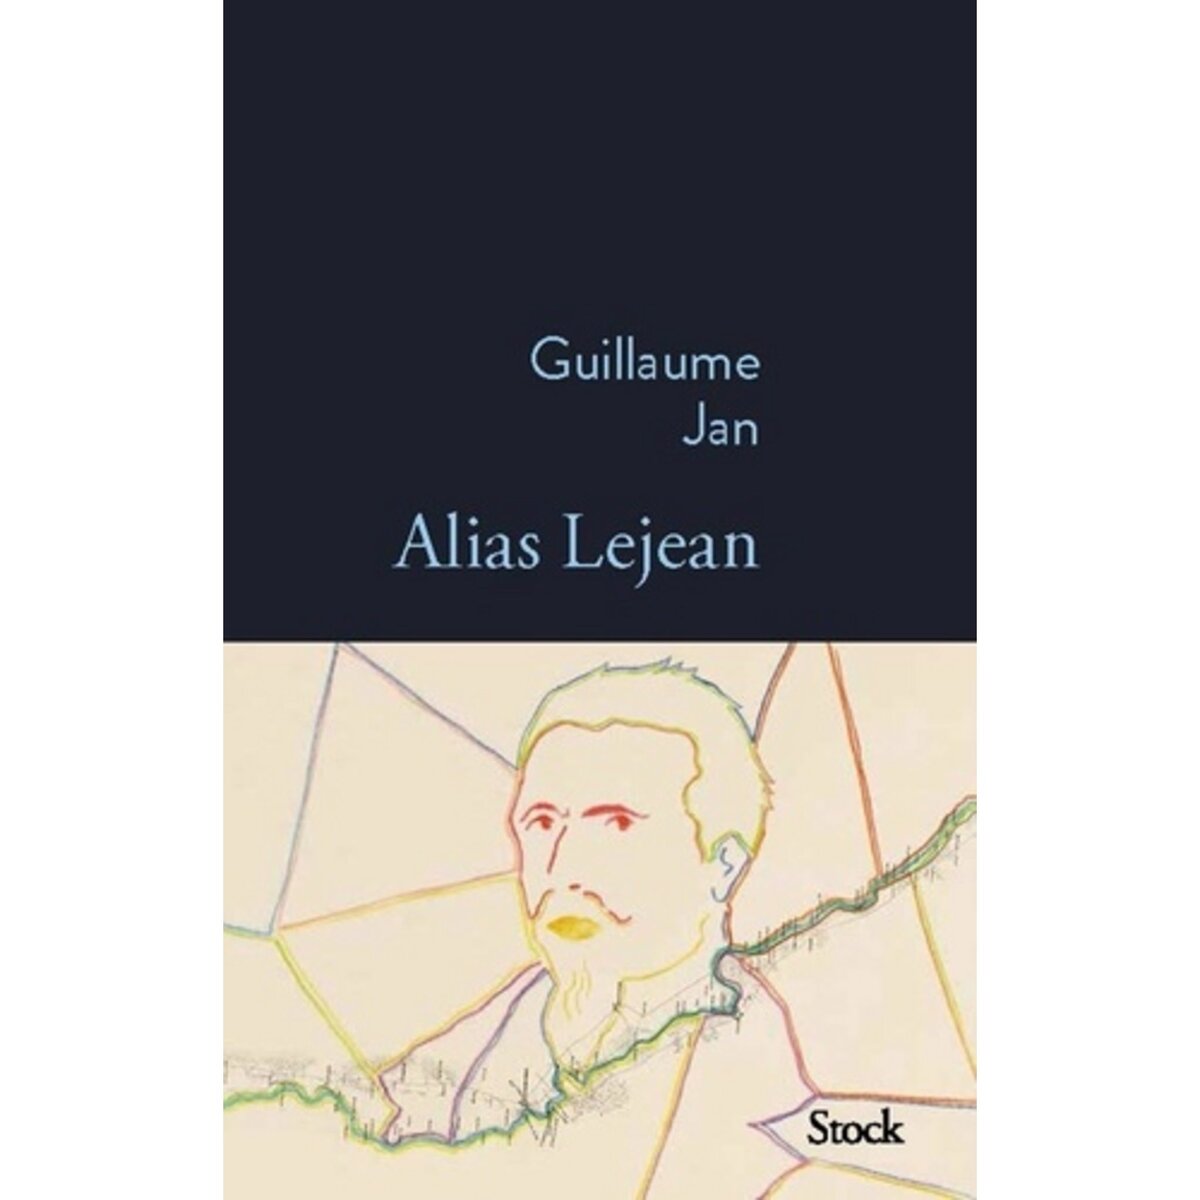  ALIAS LEJEAN, Jan Guillaume